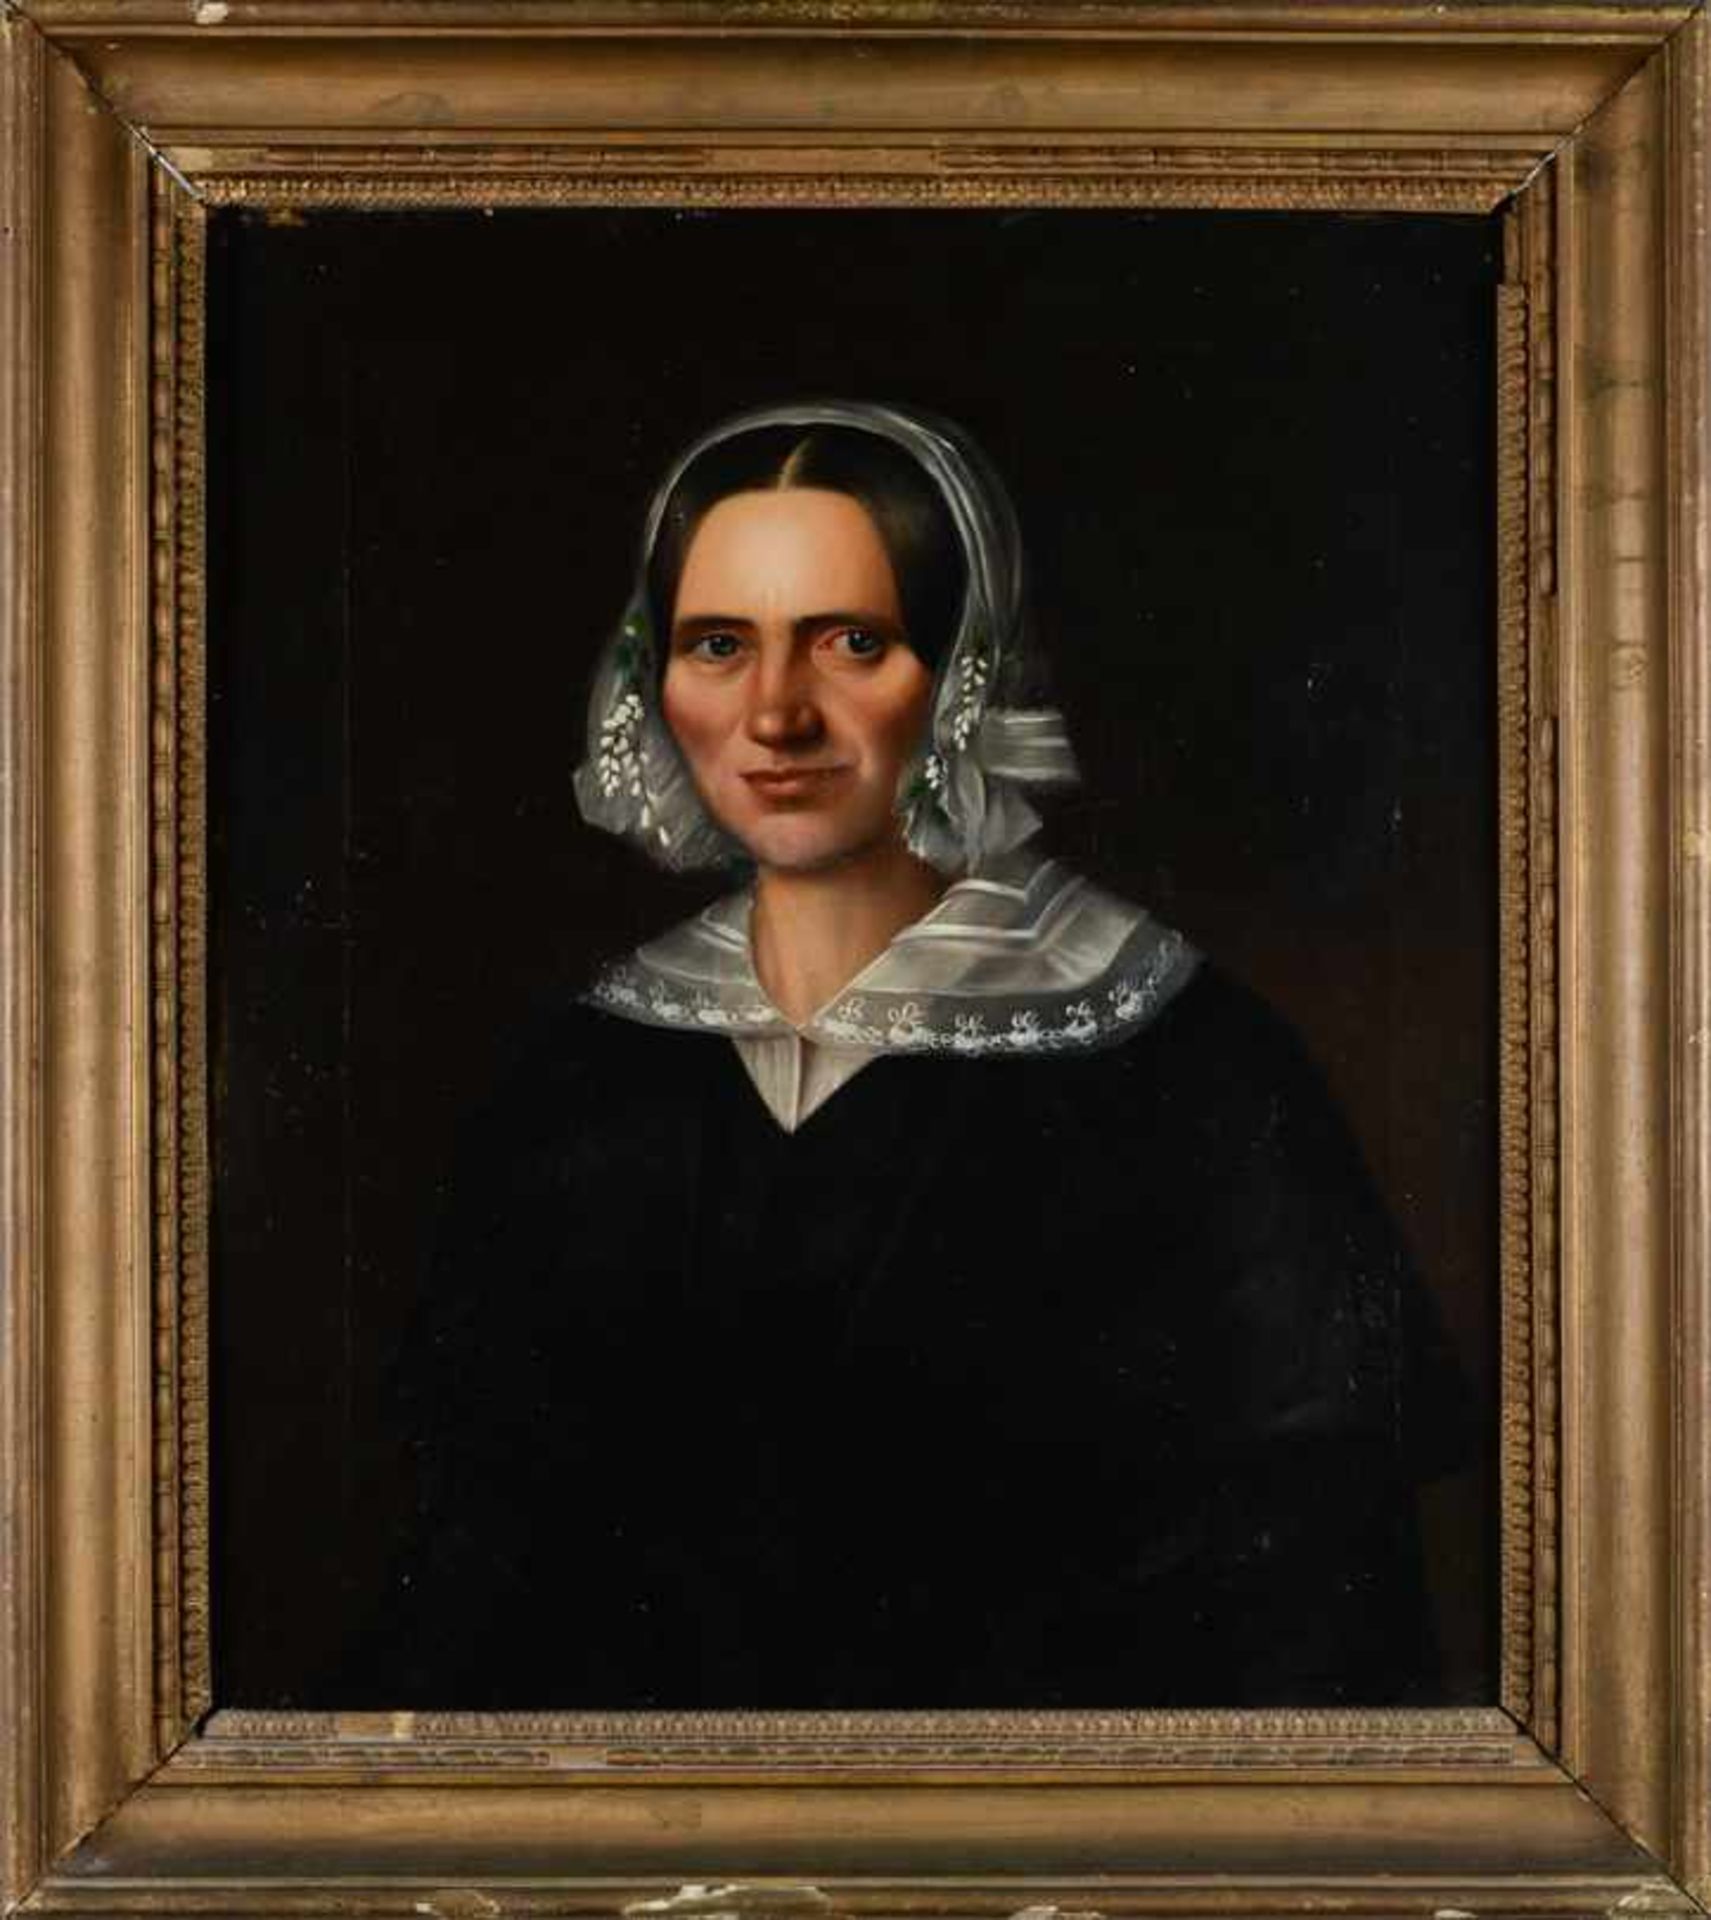 Junge Frau mit Spitzenhaube. Biedermeier-Porträt. Öl auf Leinwand, Datierung um 1840/60, unsigniert,